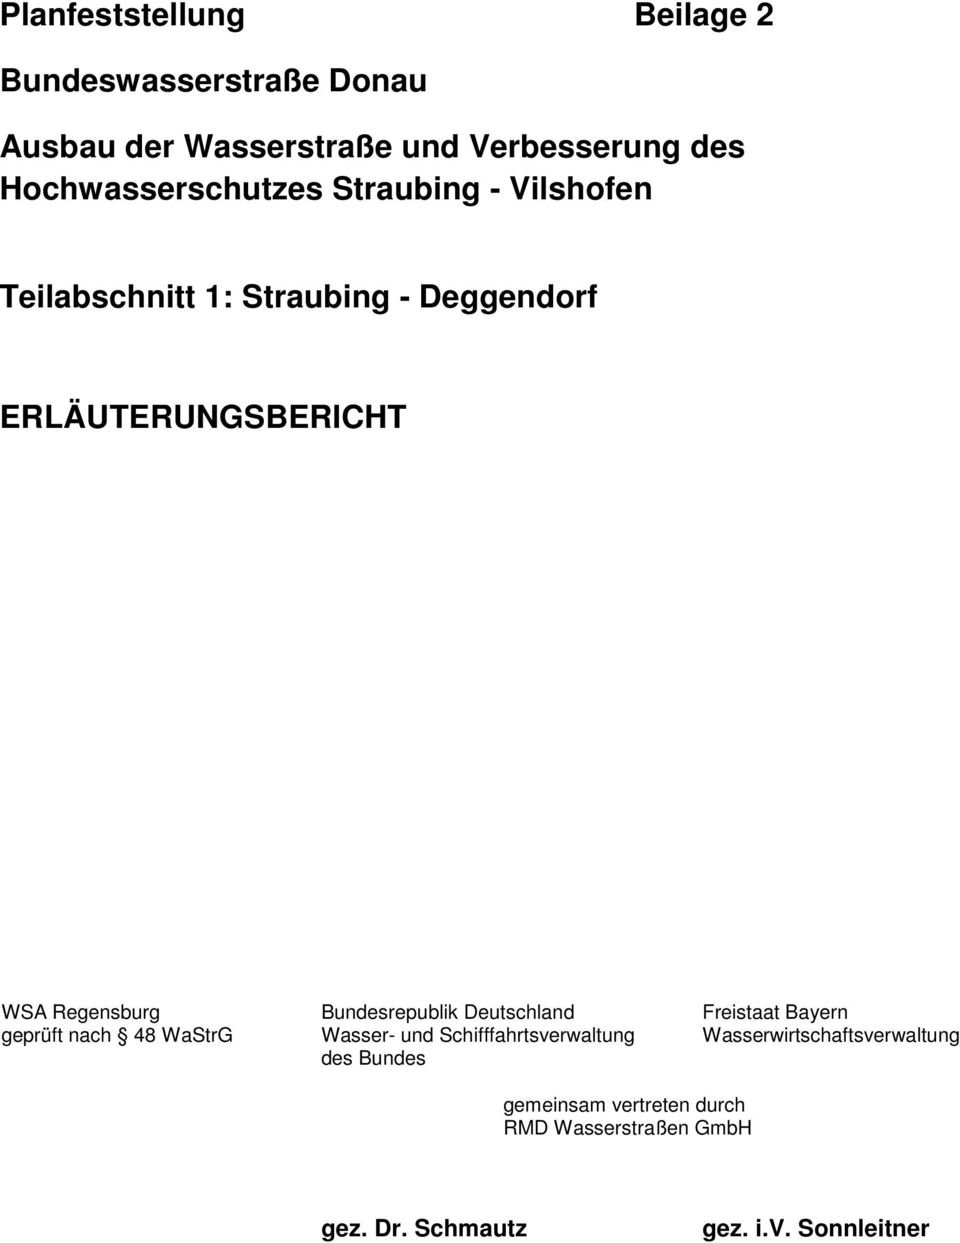 Regensburg geprüft nach 48 WaStrG Bundesrepublik Deutschland Wasser- und Schifffahrtsverwaltung des Bundes